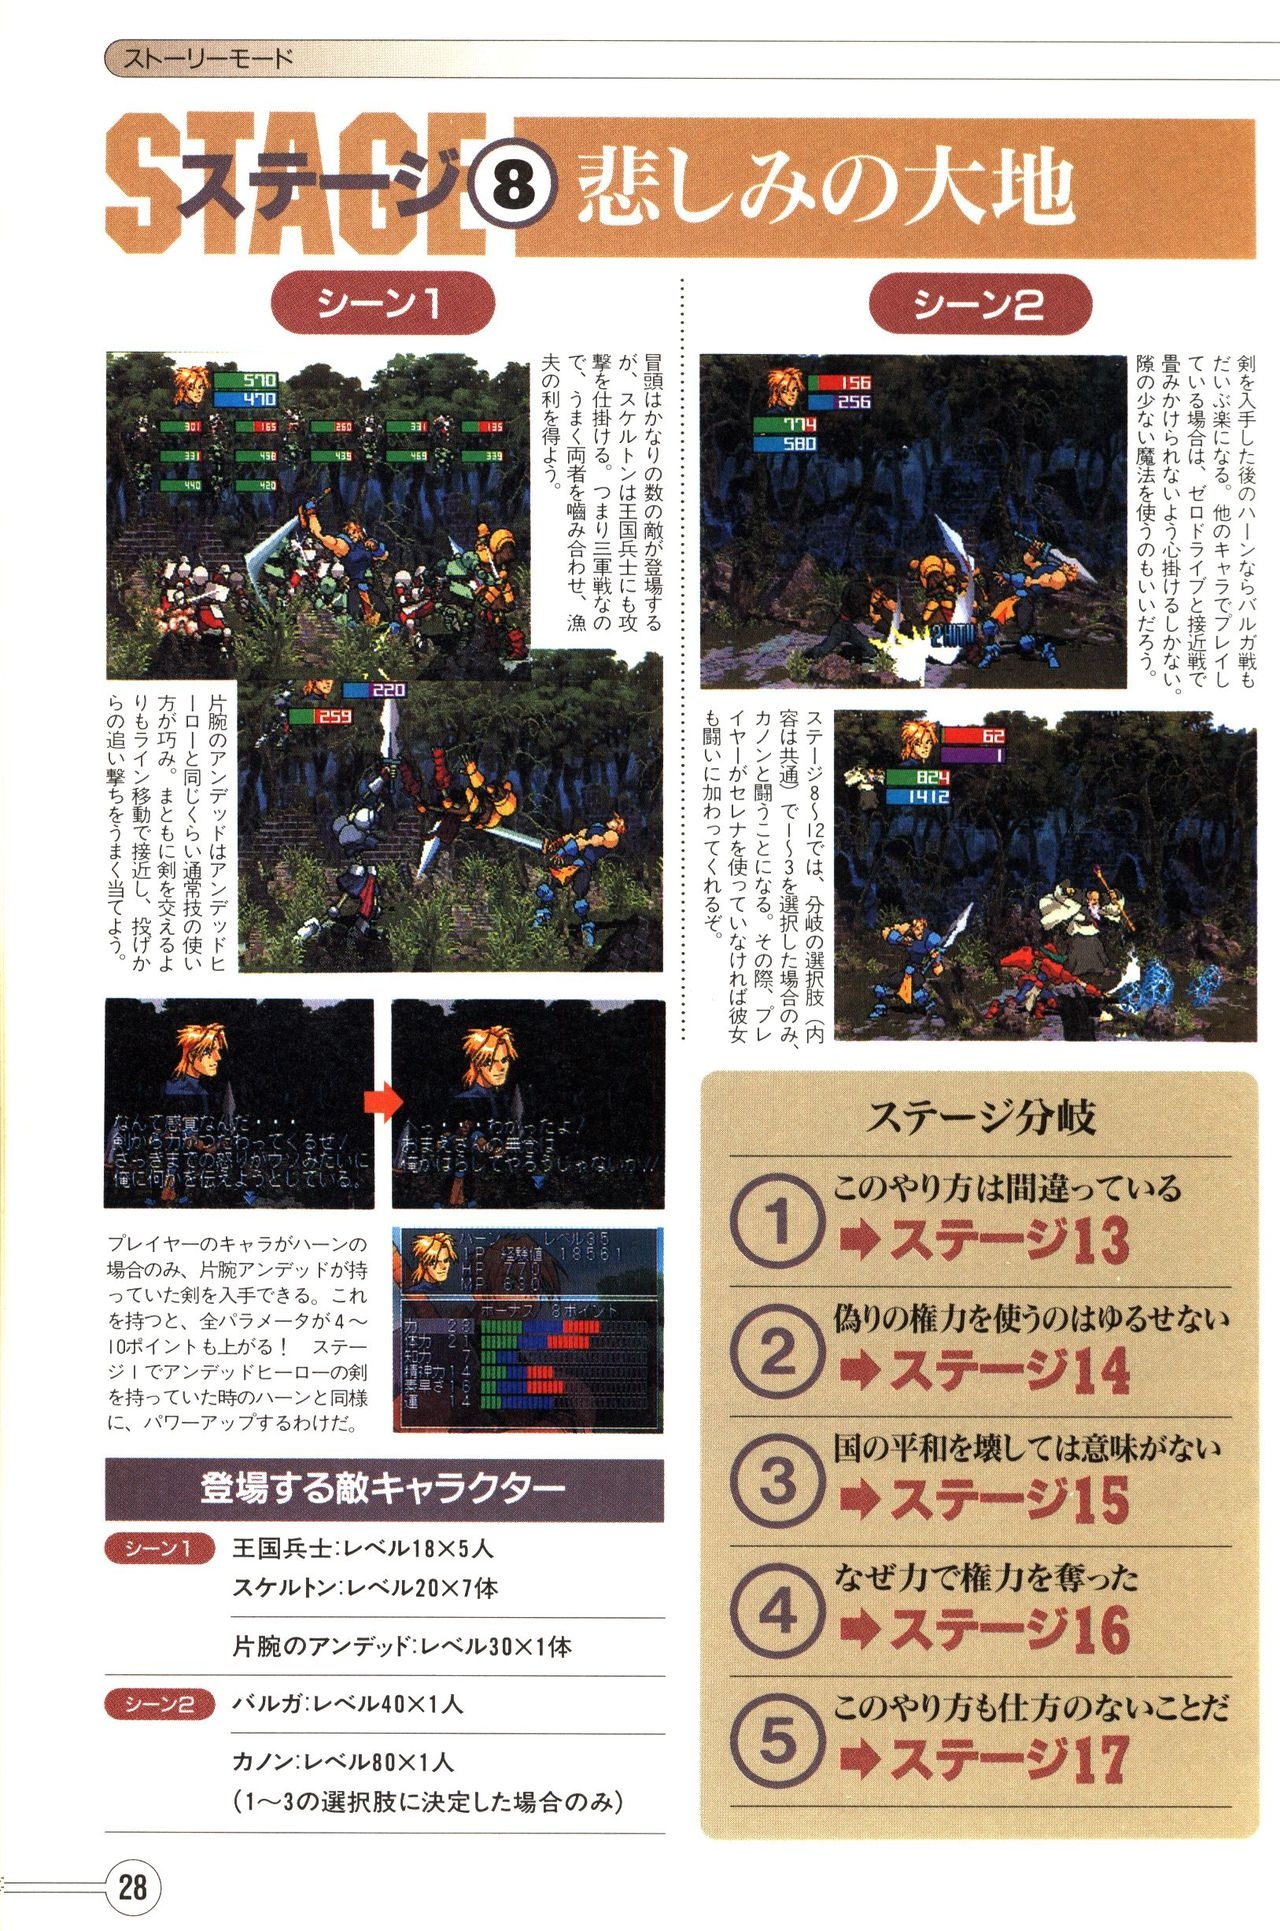 Guardian Heroes Perfect Guide (Sega Saturn magazine books) 30